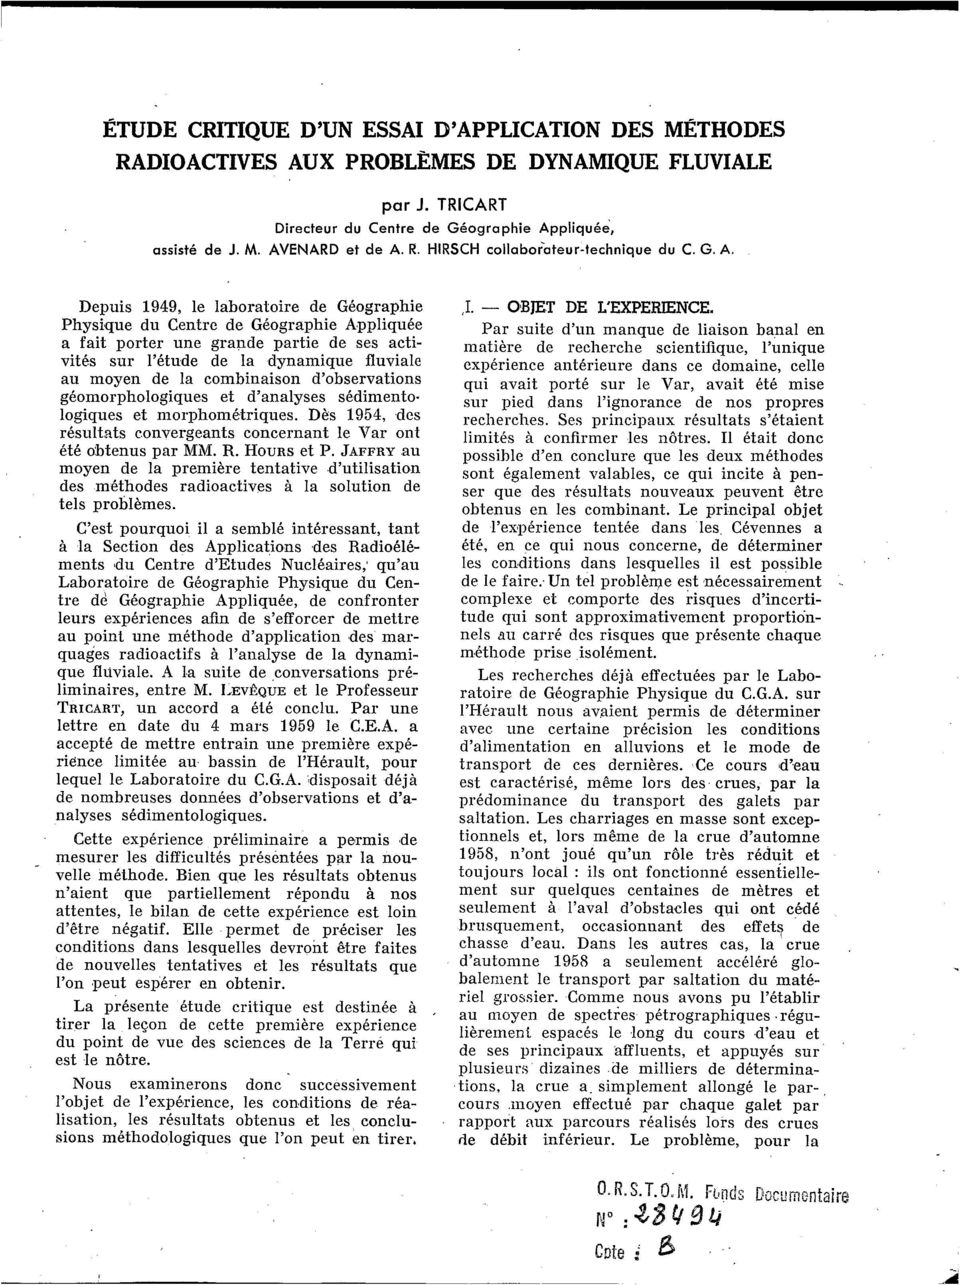 combinaison d observations géomorphologiques et d analyses sédimento. logiques et morphométriques. Dès 1954, des résultats convergeants concernant le Var ont été obtenus par MM. R. HOURS et P.